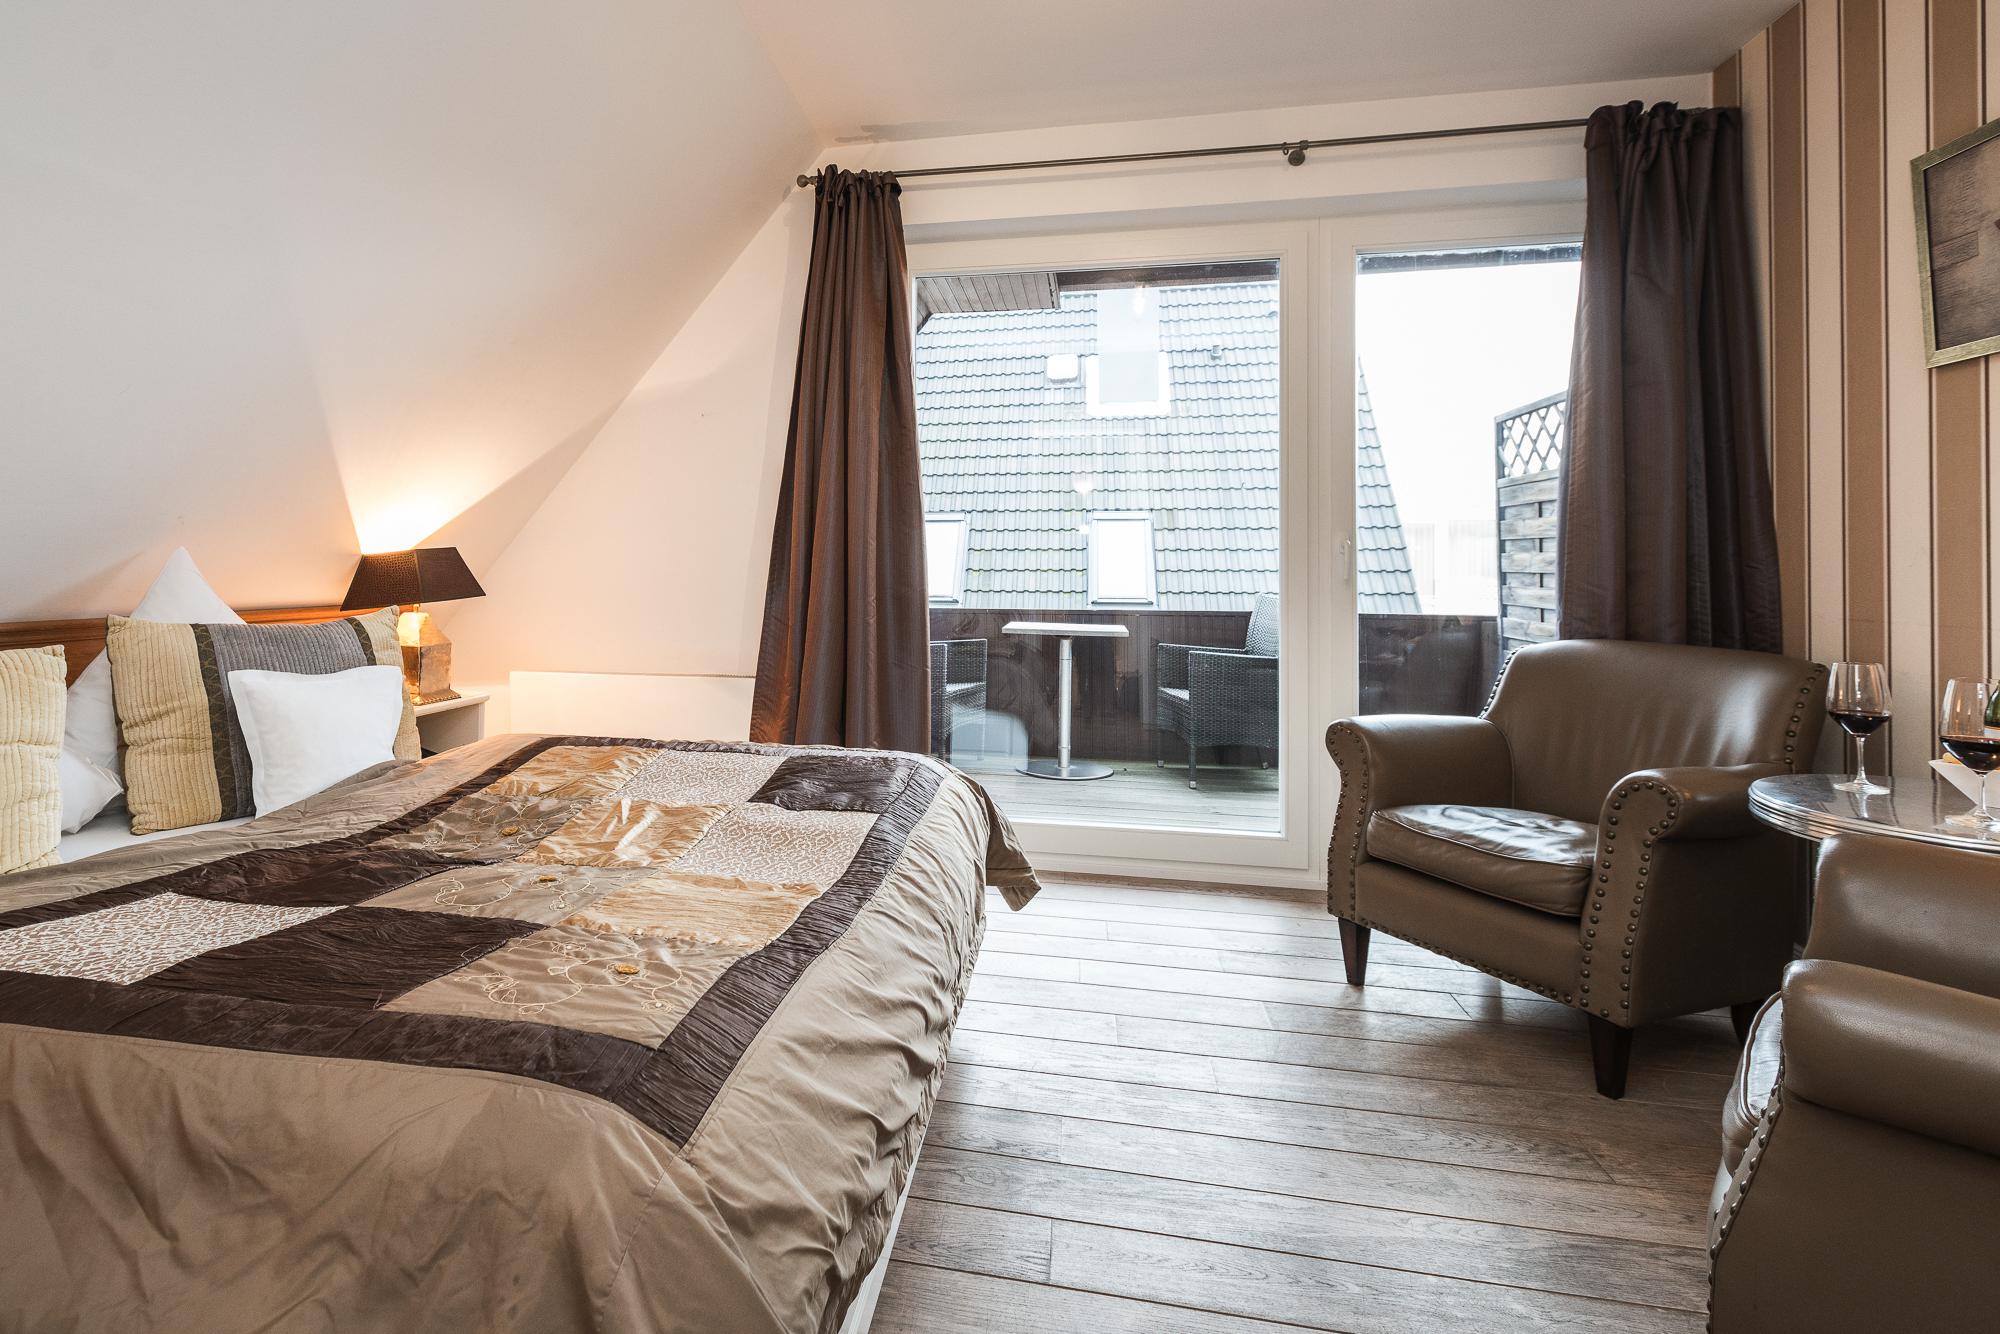 Modernes Doppelzimmer mit Doppelbett, zwei Nachttischen im Hotel Landhaus Sylter Hahn in Westerland.